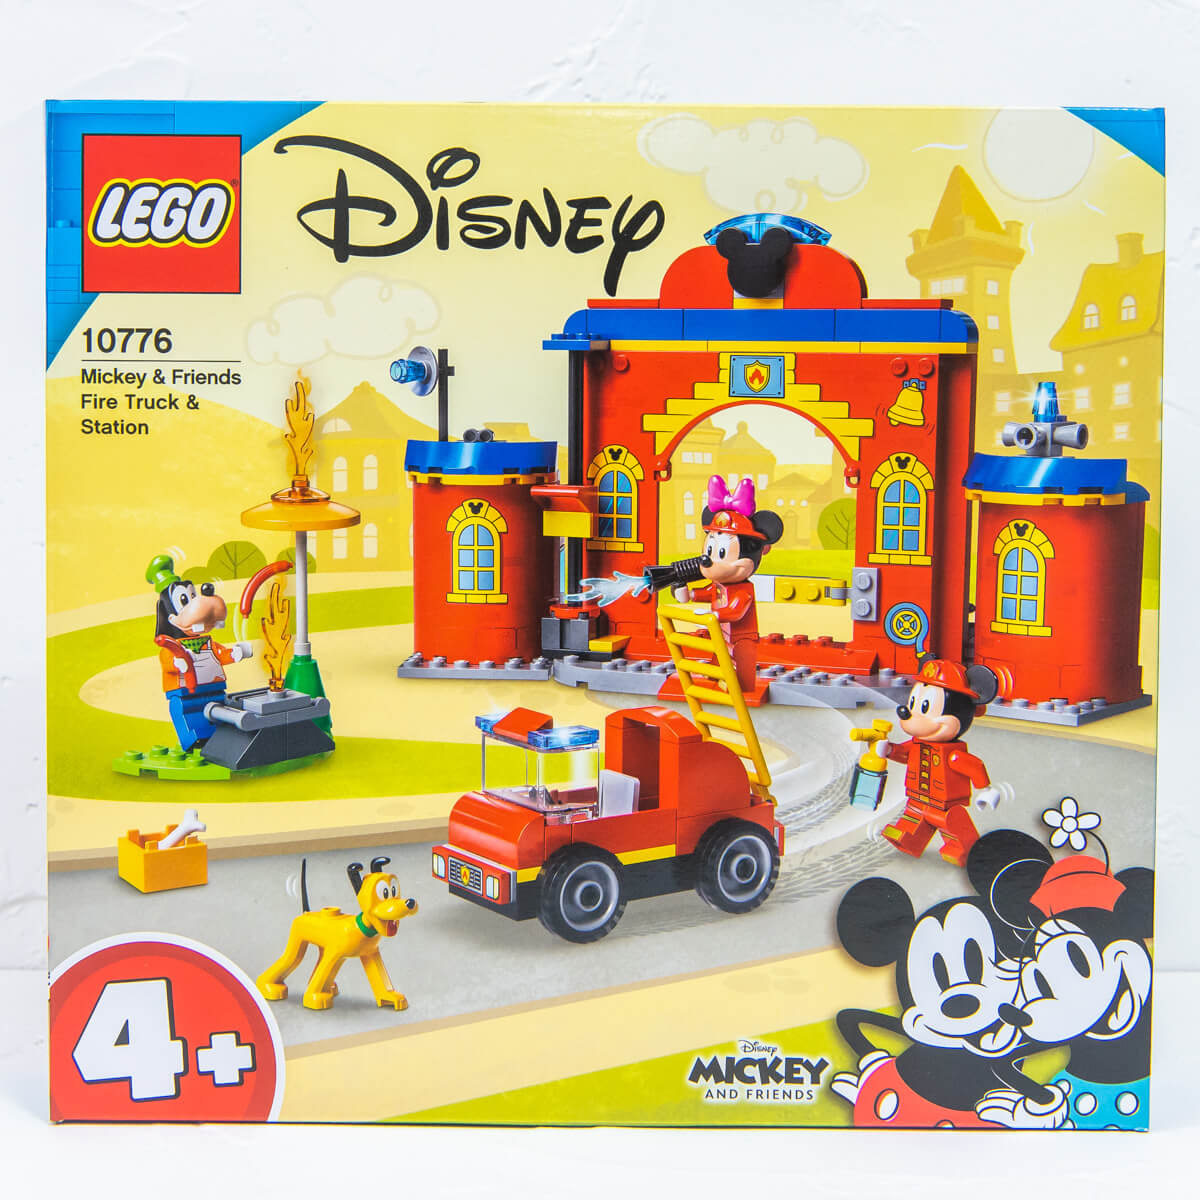 レゴ 4+「ディズニー ミッキーマウス＆フレンズ」ミッキー&フレンズのしょうぼうしょ　パッケージ